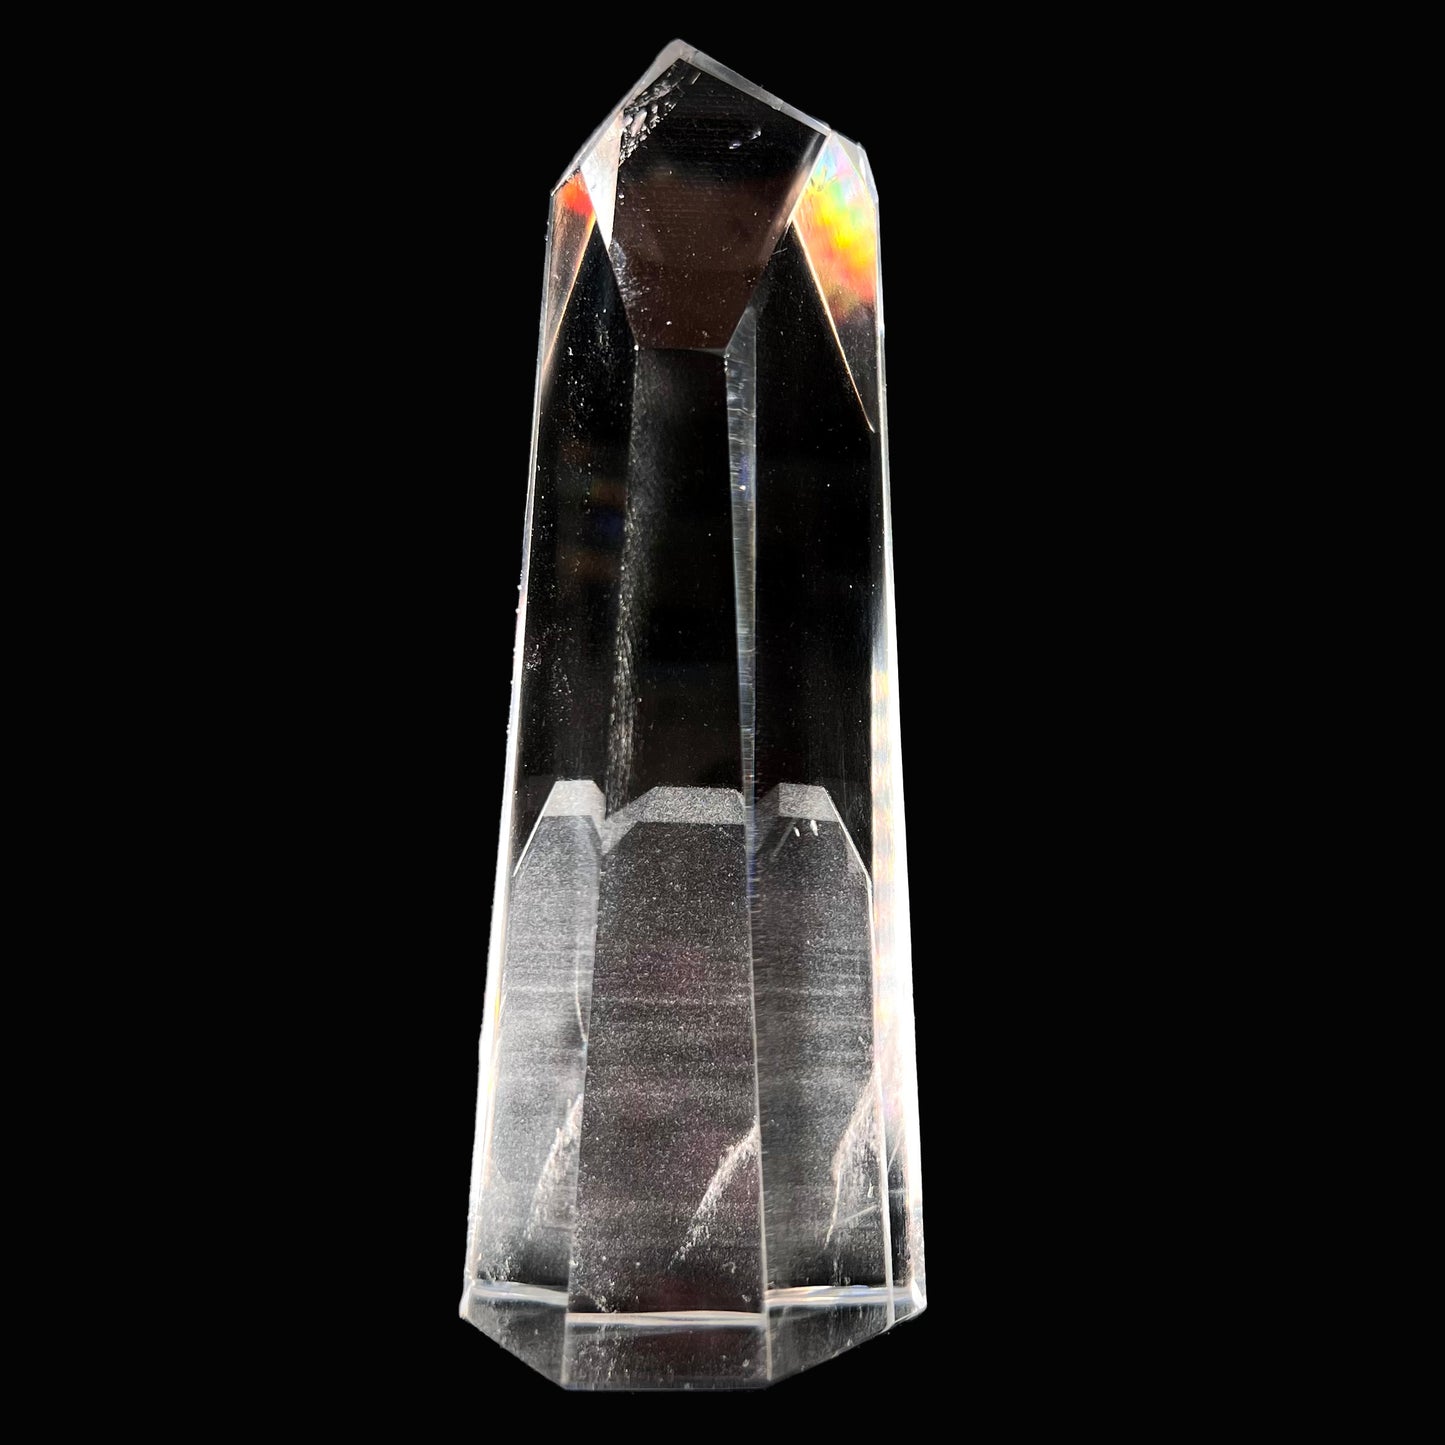 A 5.5 inch clear quartz crystal with a tabular quartz phantom inclusion.